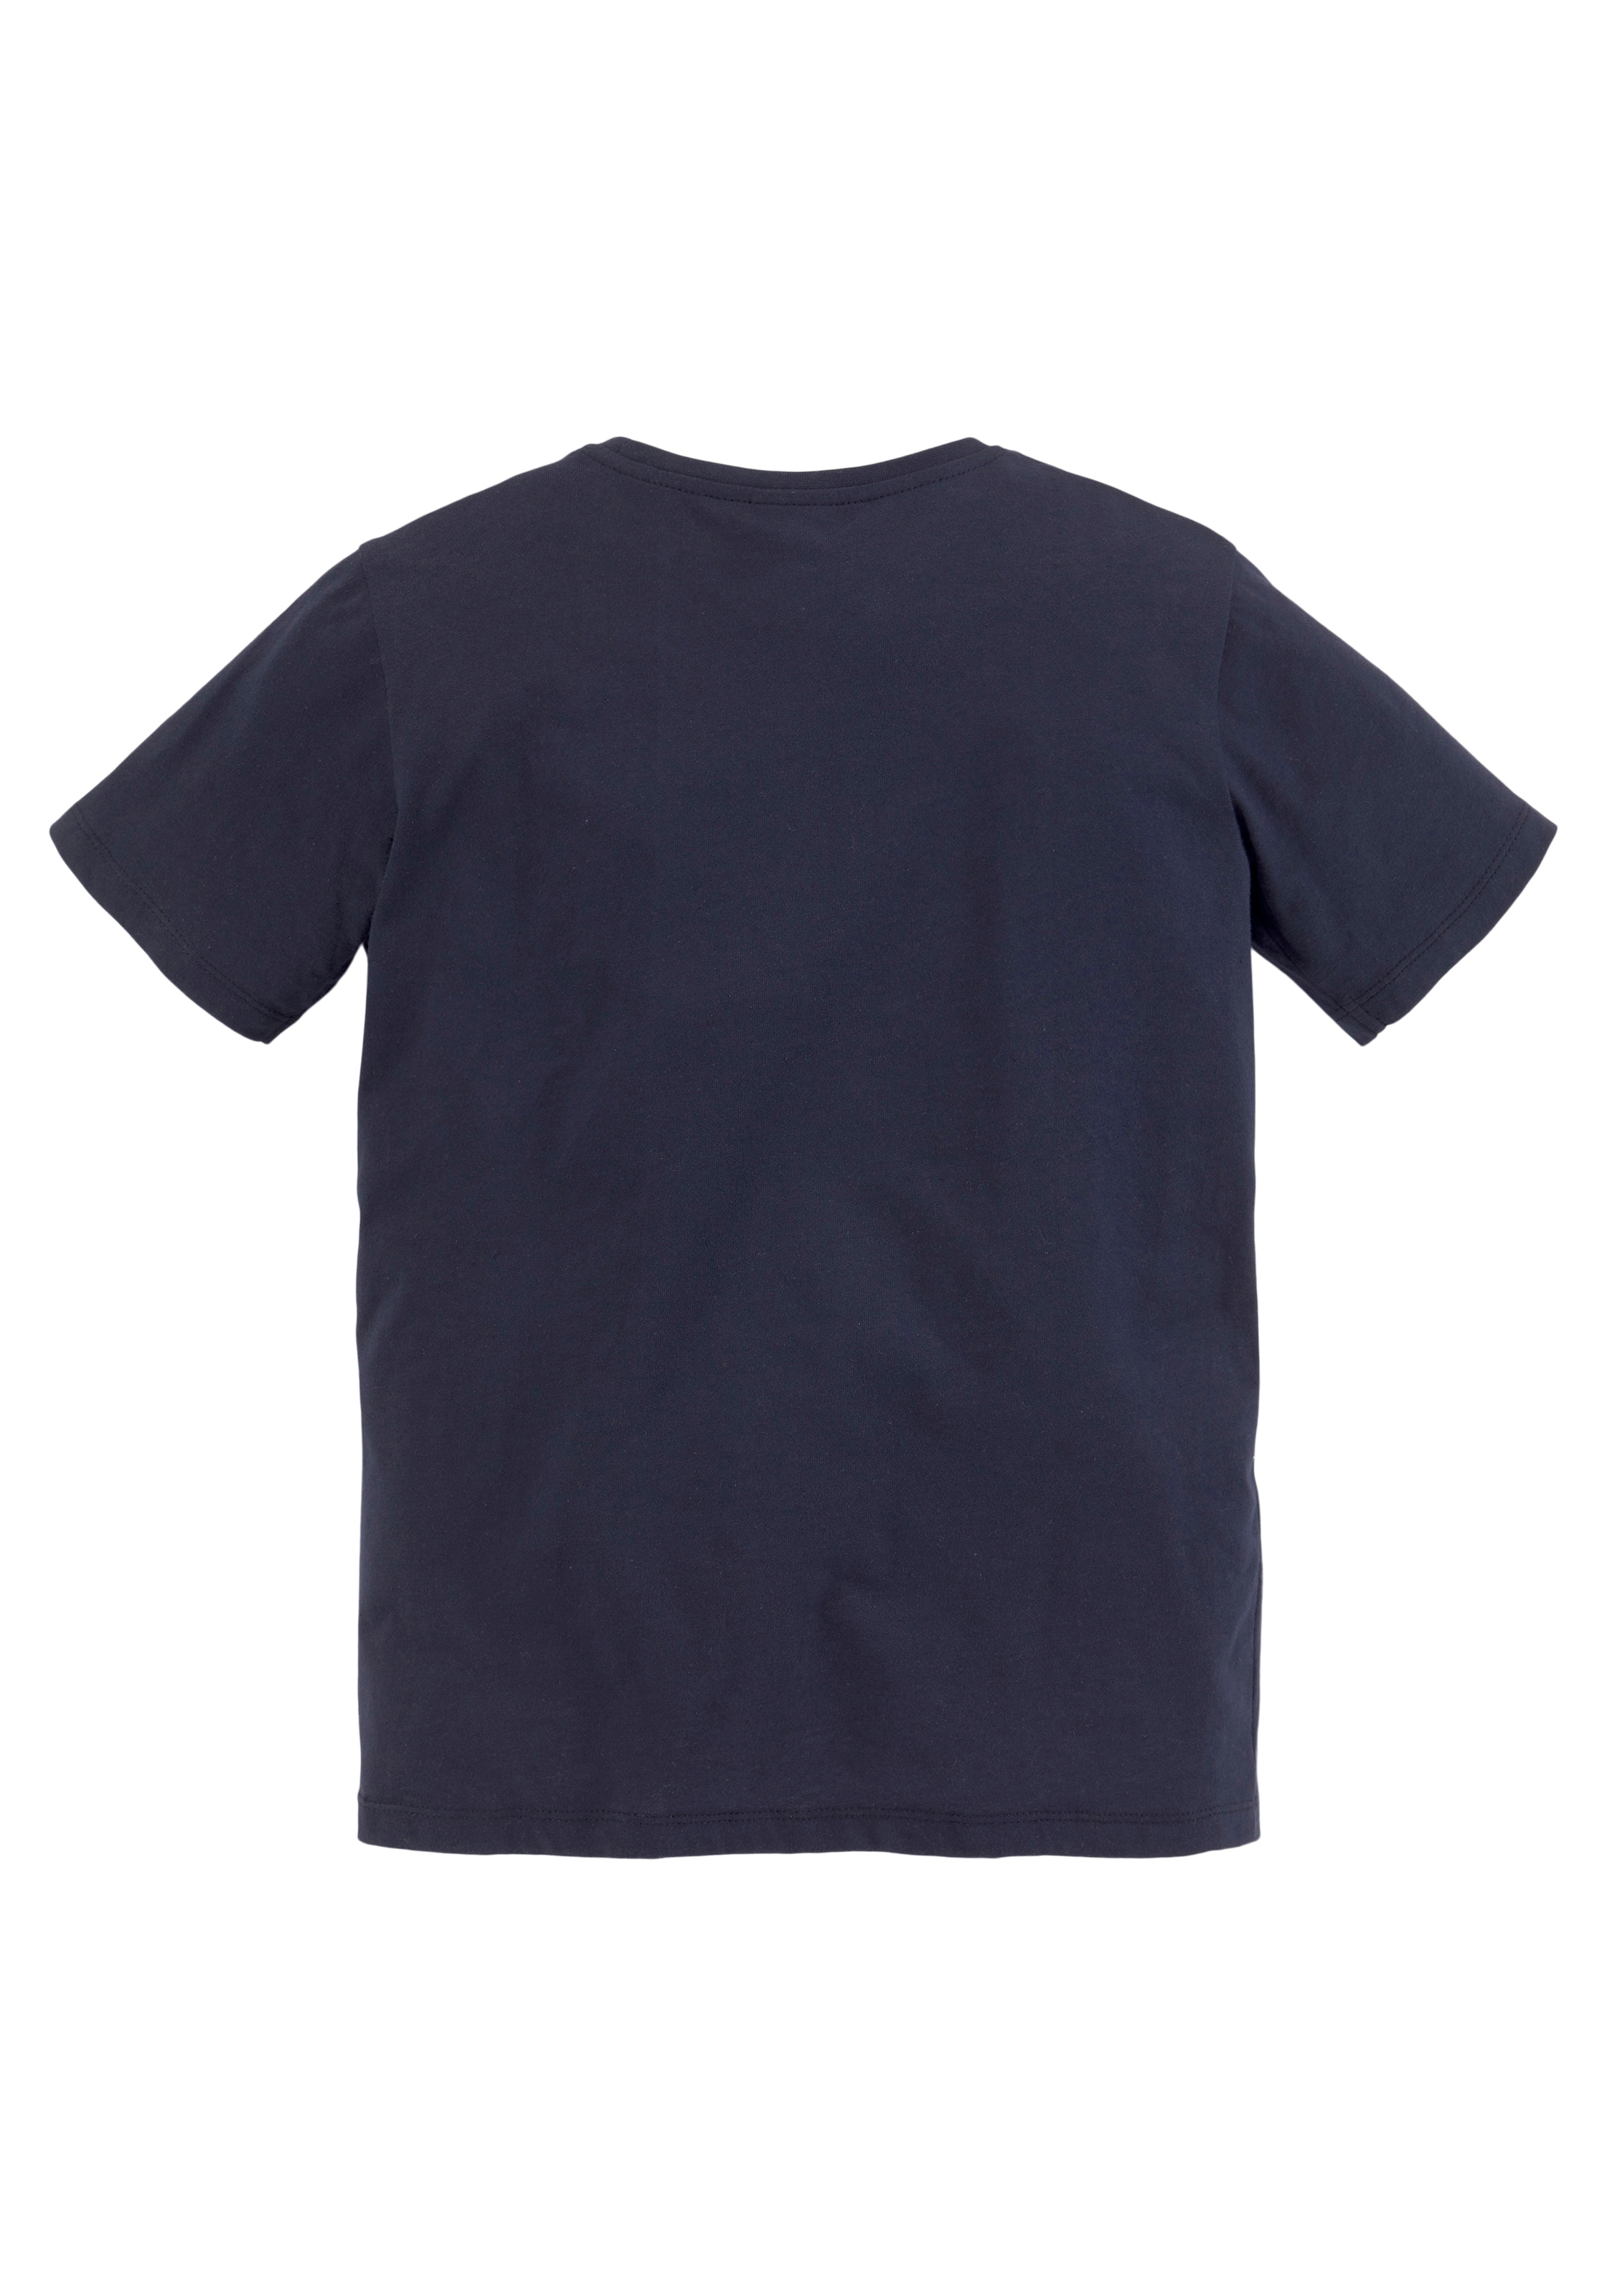 KIDSWORLD T-Shirt & Sweatbermudas, 2 BIKER auf kaufen 2), (Set, Raten tlg